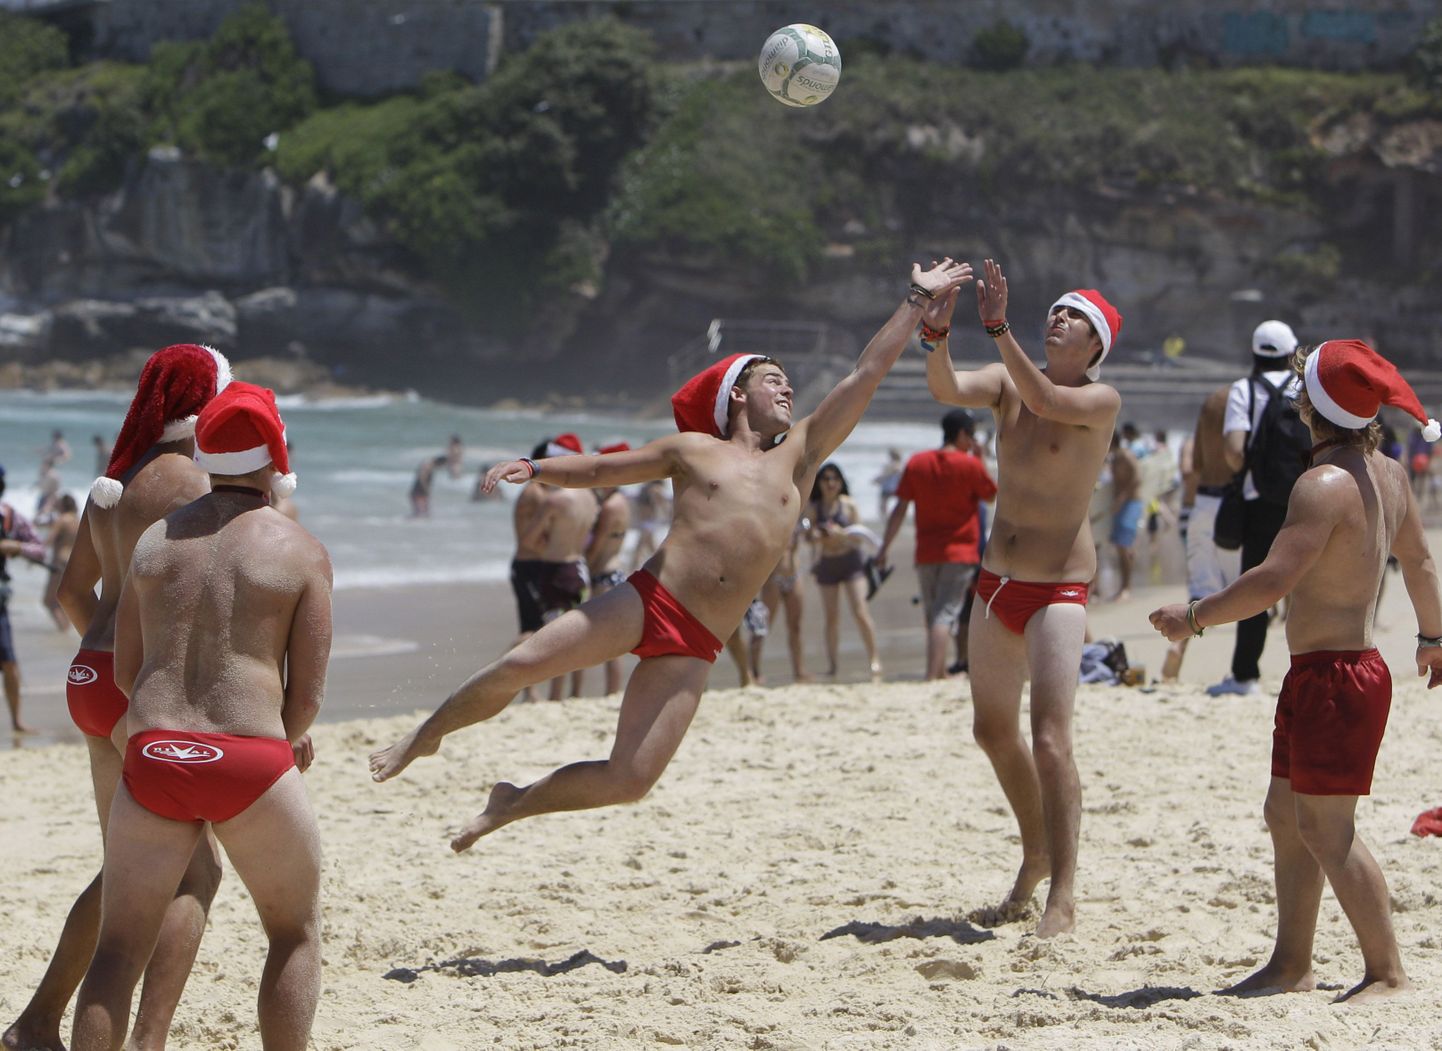 Briti turistid rannavõrkpalli mängimas.